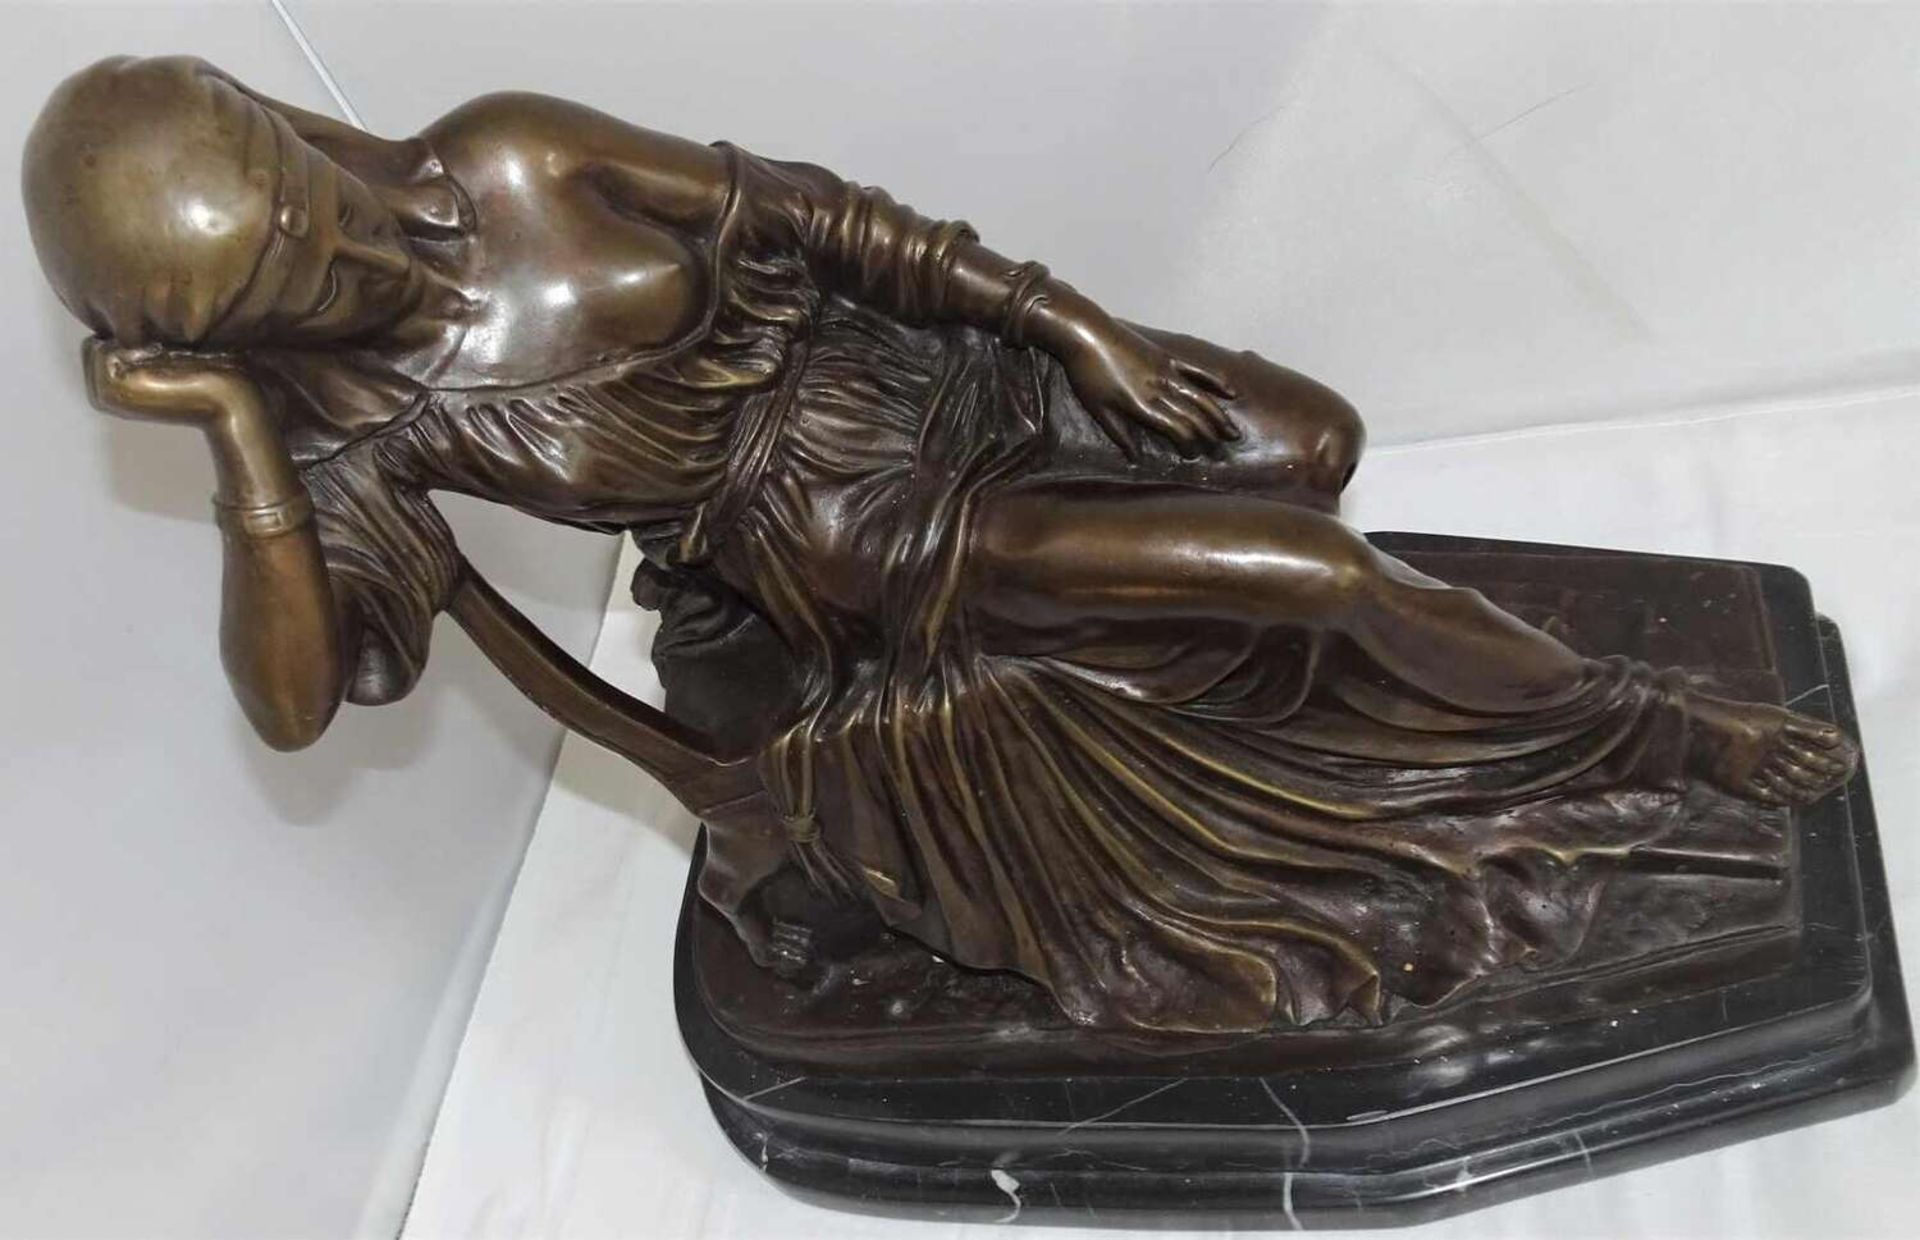 B.C. Zheng (xx), Bronzefigur "Fortuna auf Thron", Maße ohne Sockel: Höhe ca. 40 cm, Breite ca. 14